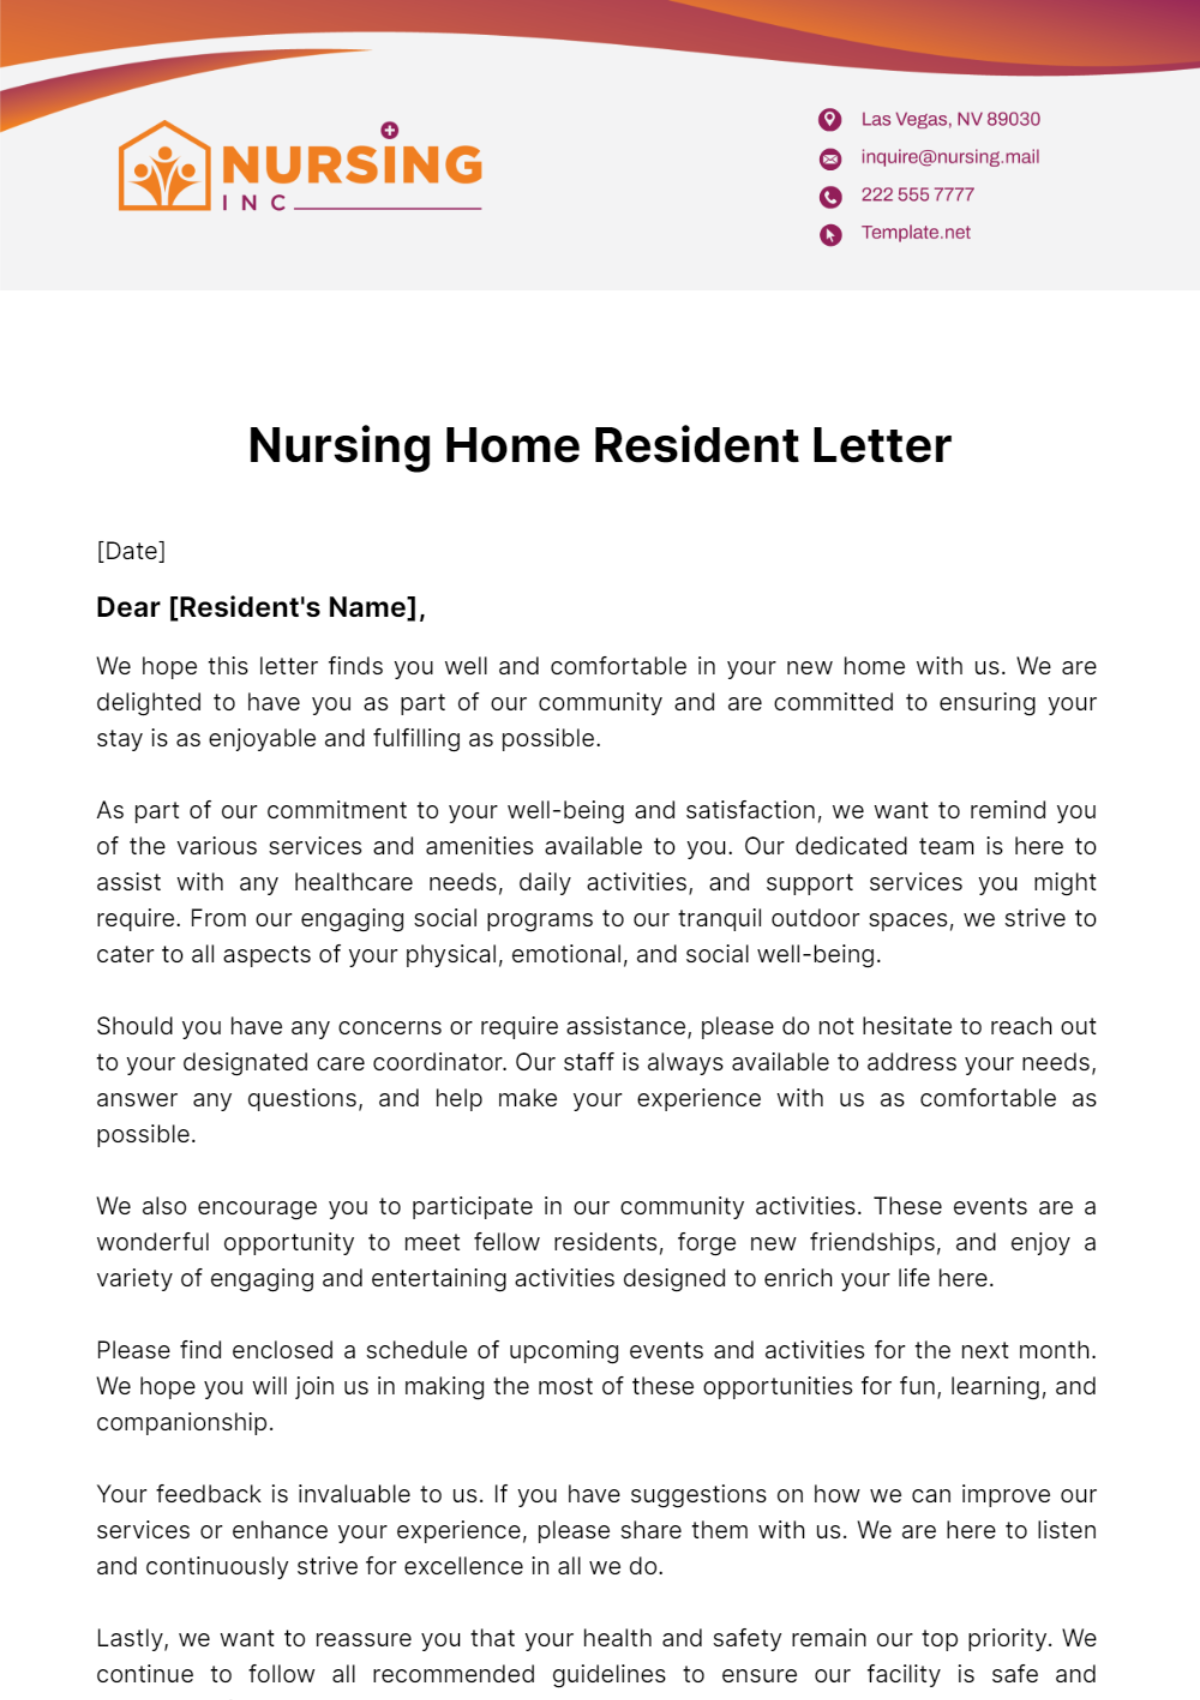 Free Nursing Home Resident Letter Template